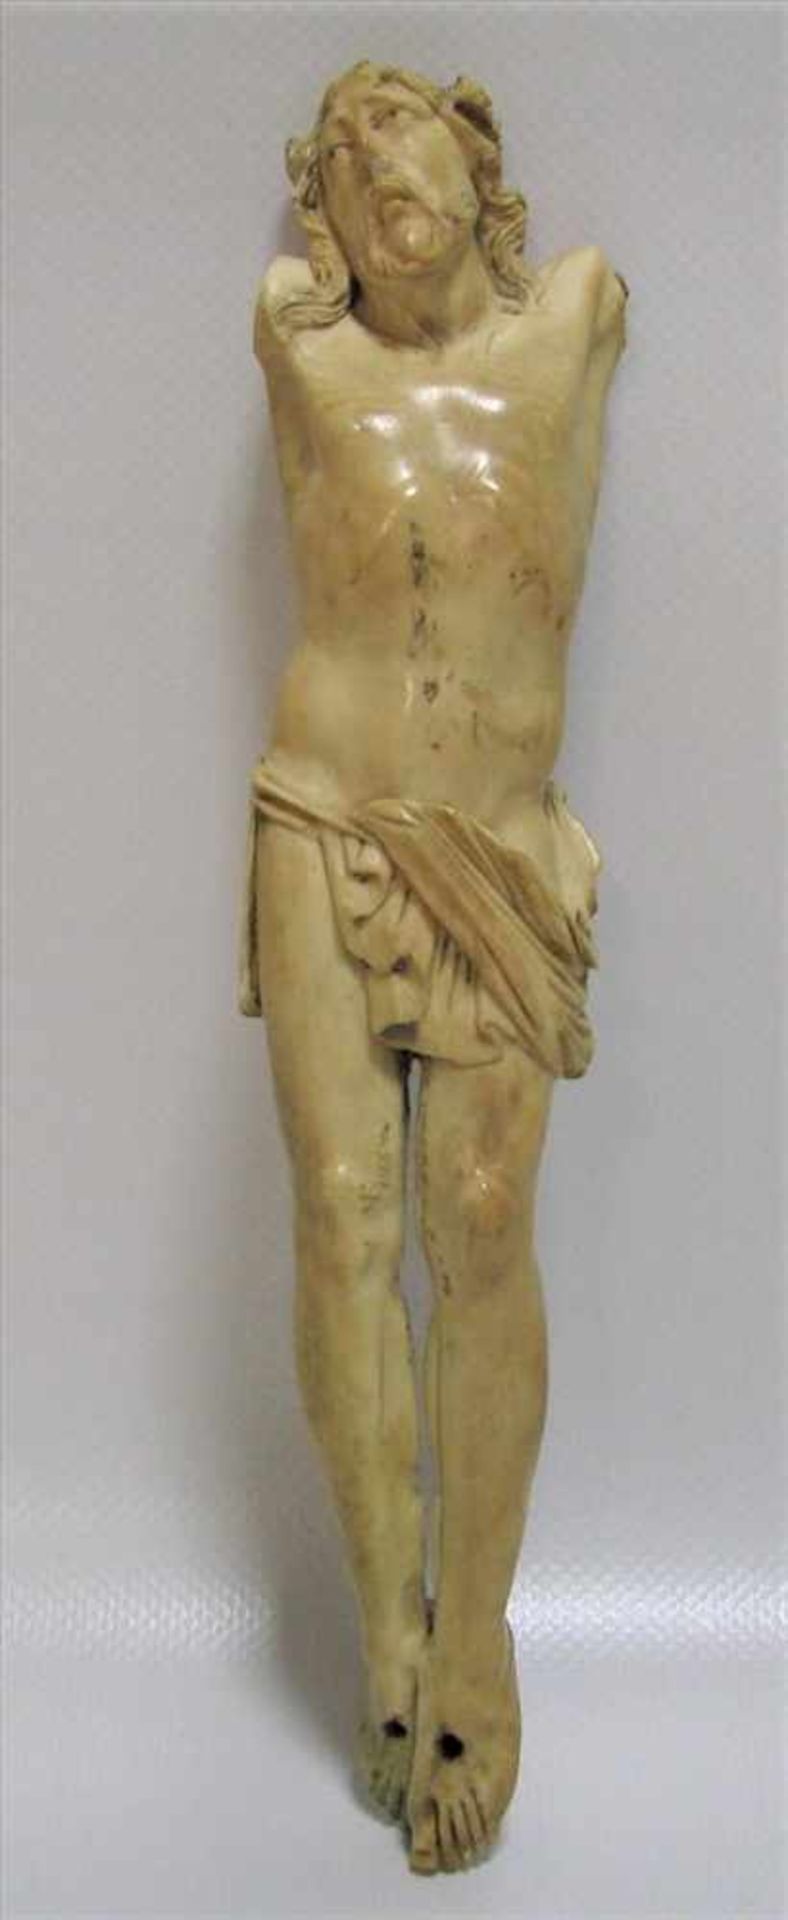 Christuskorpus, 18./19. Jahrhundert, Elfenbein fein beschnitzt, 2-Nagel-Typus, h 20,6 cm, d 4 cm.